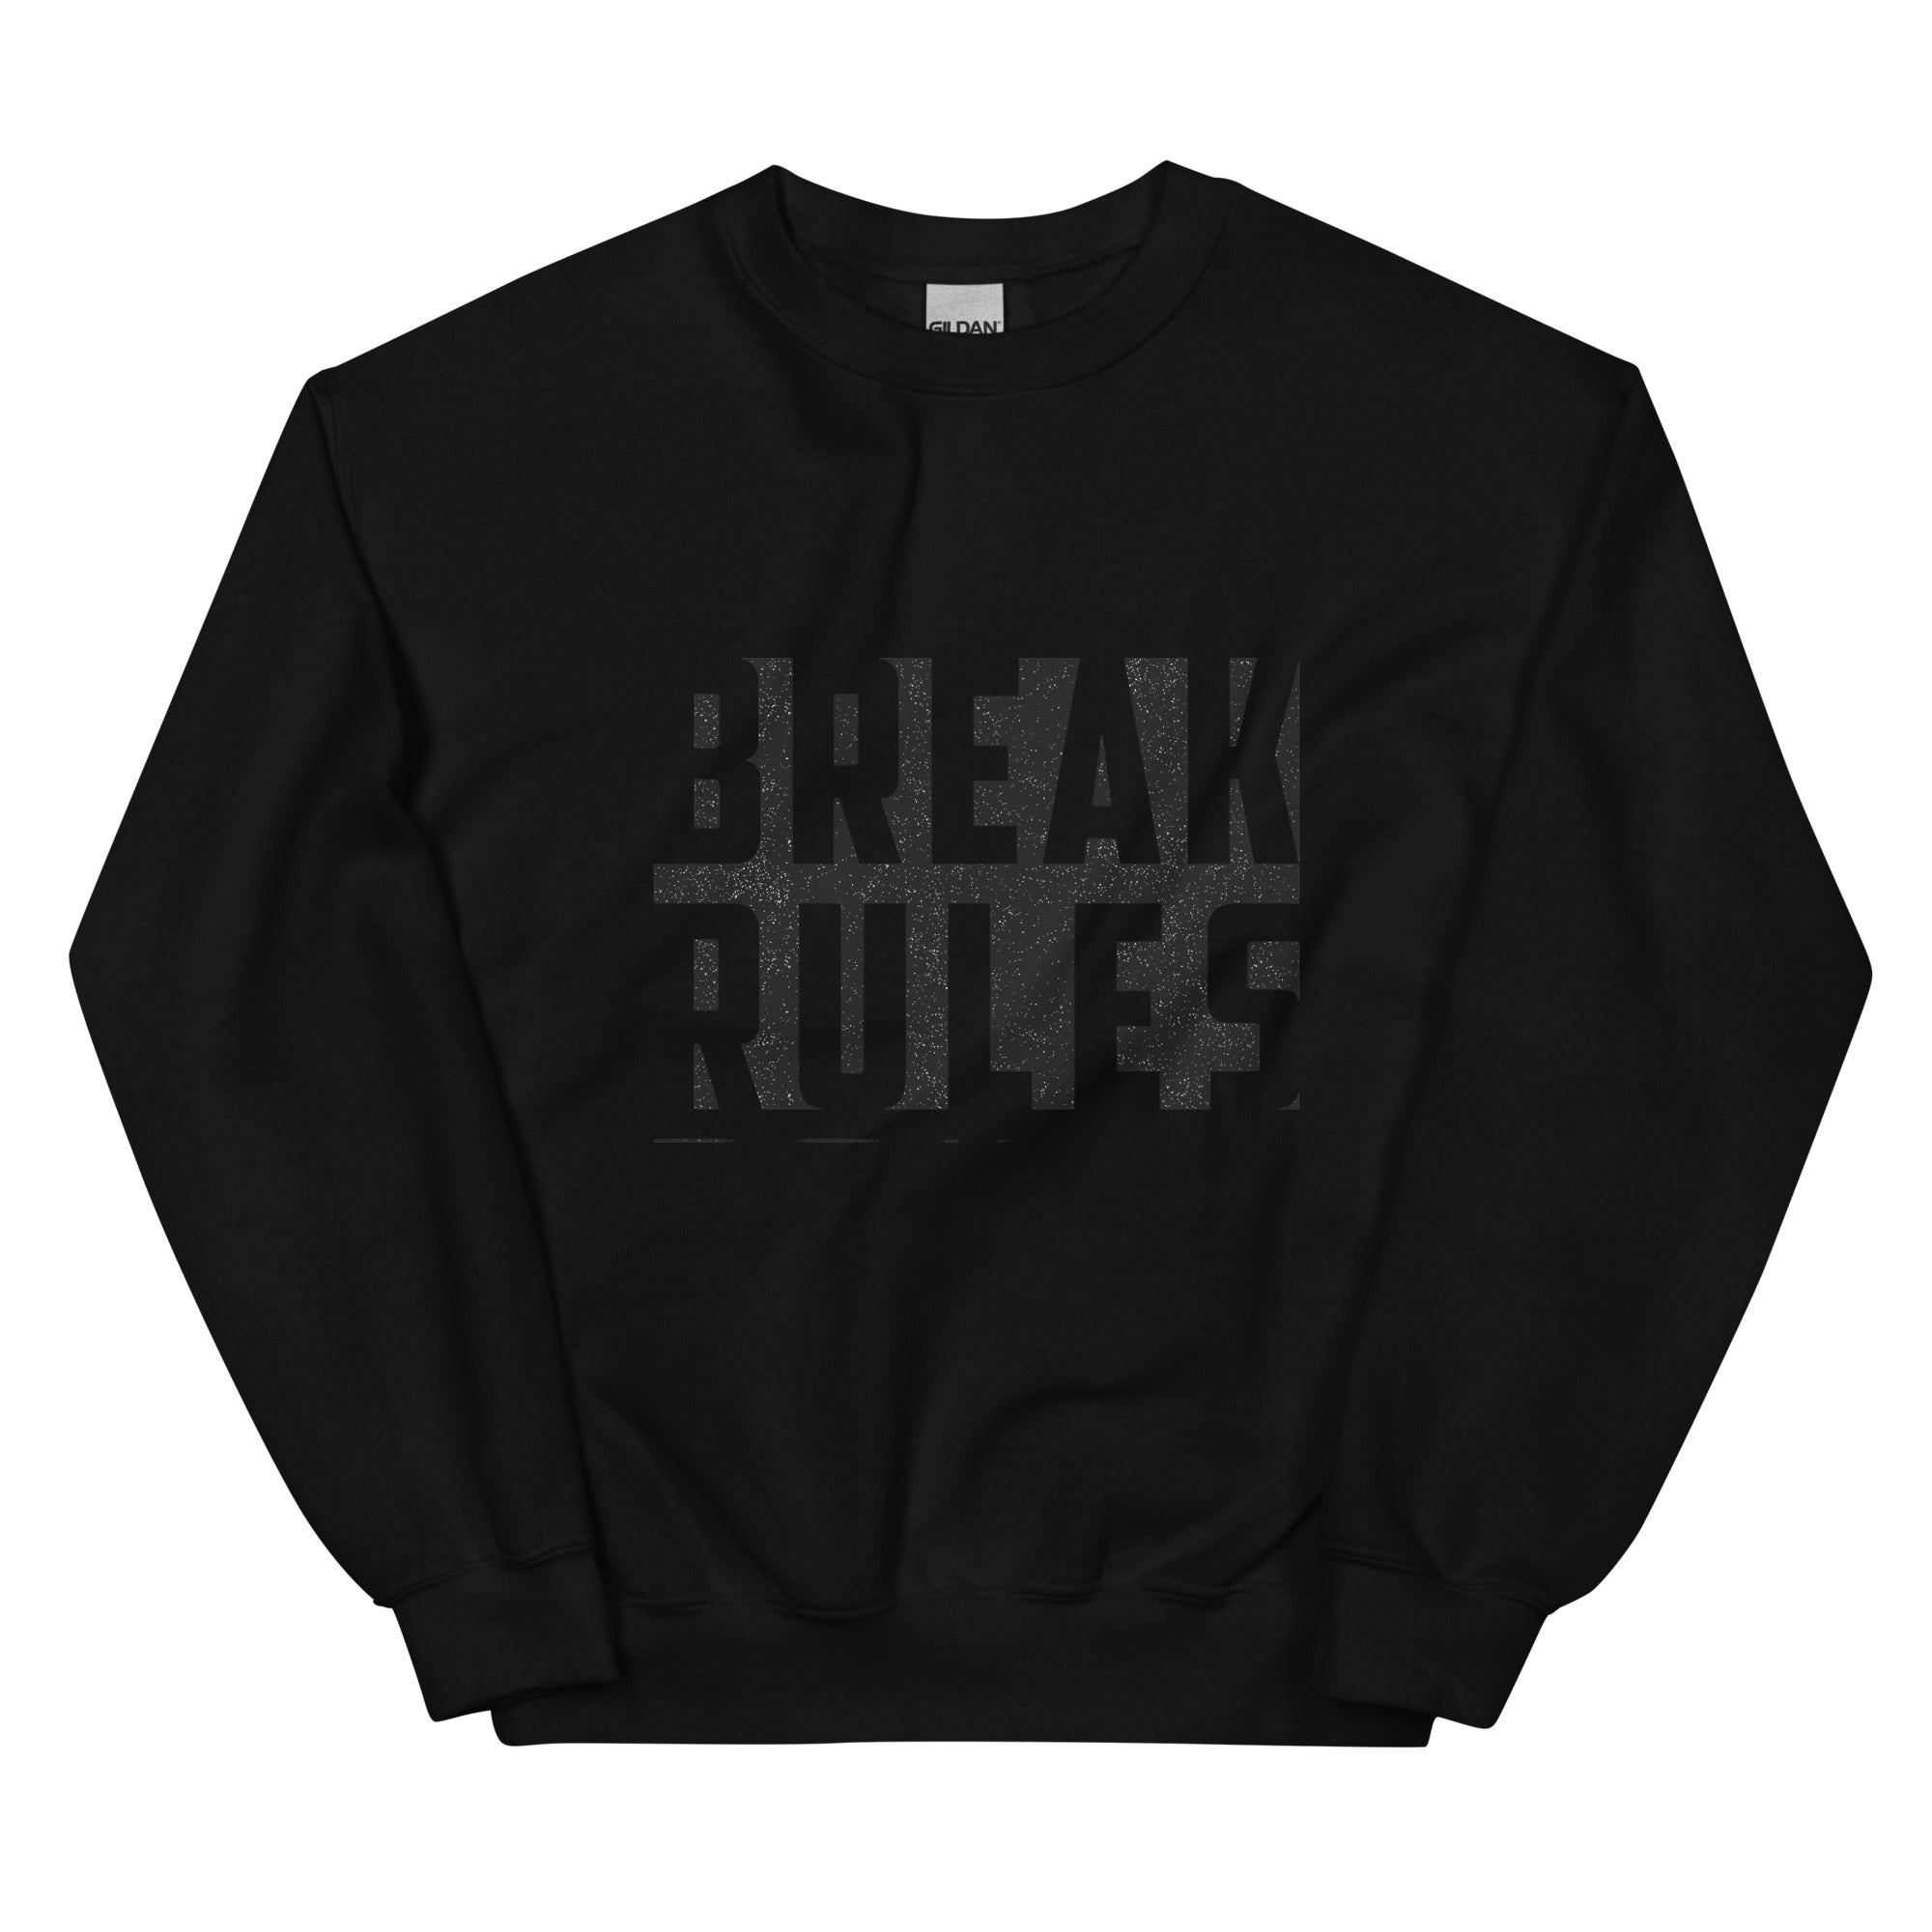 Break Sweatshirt for women